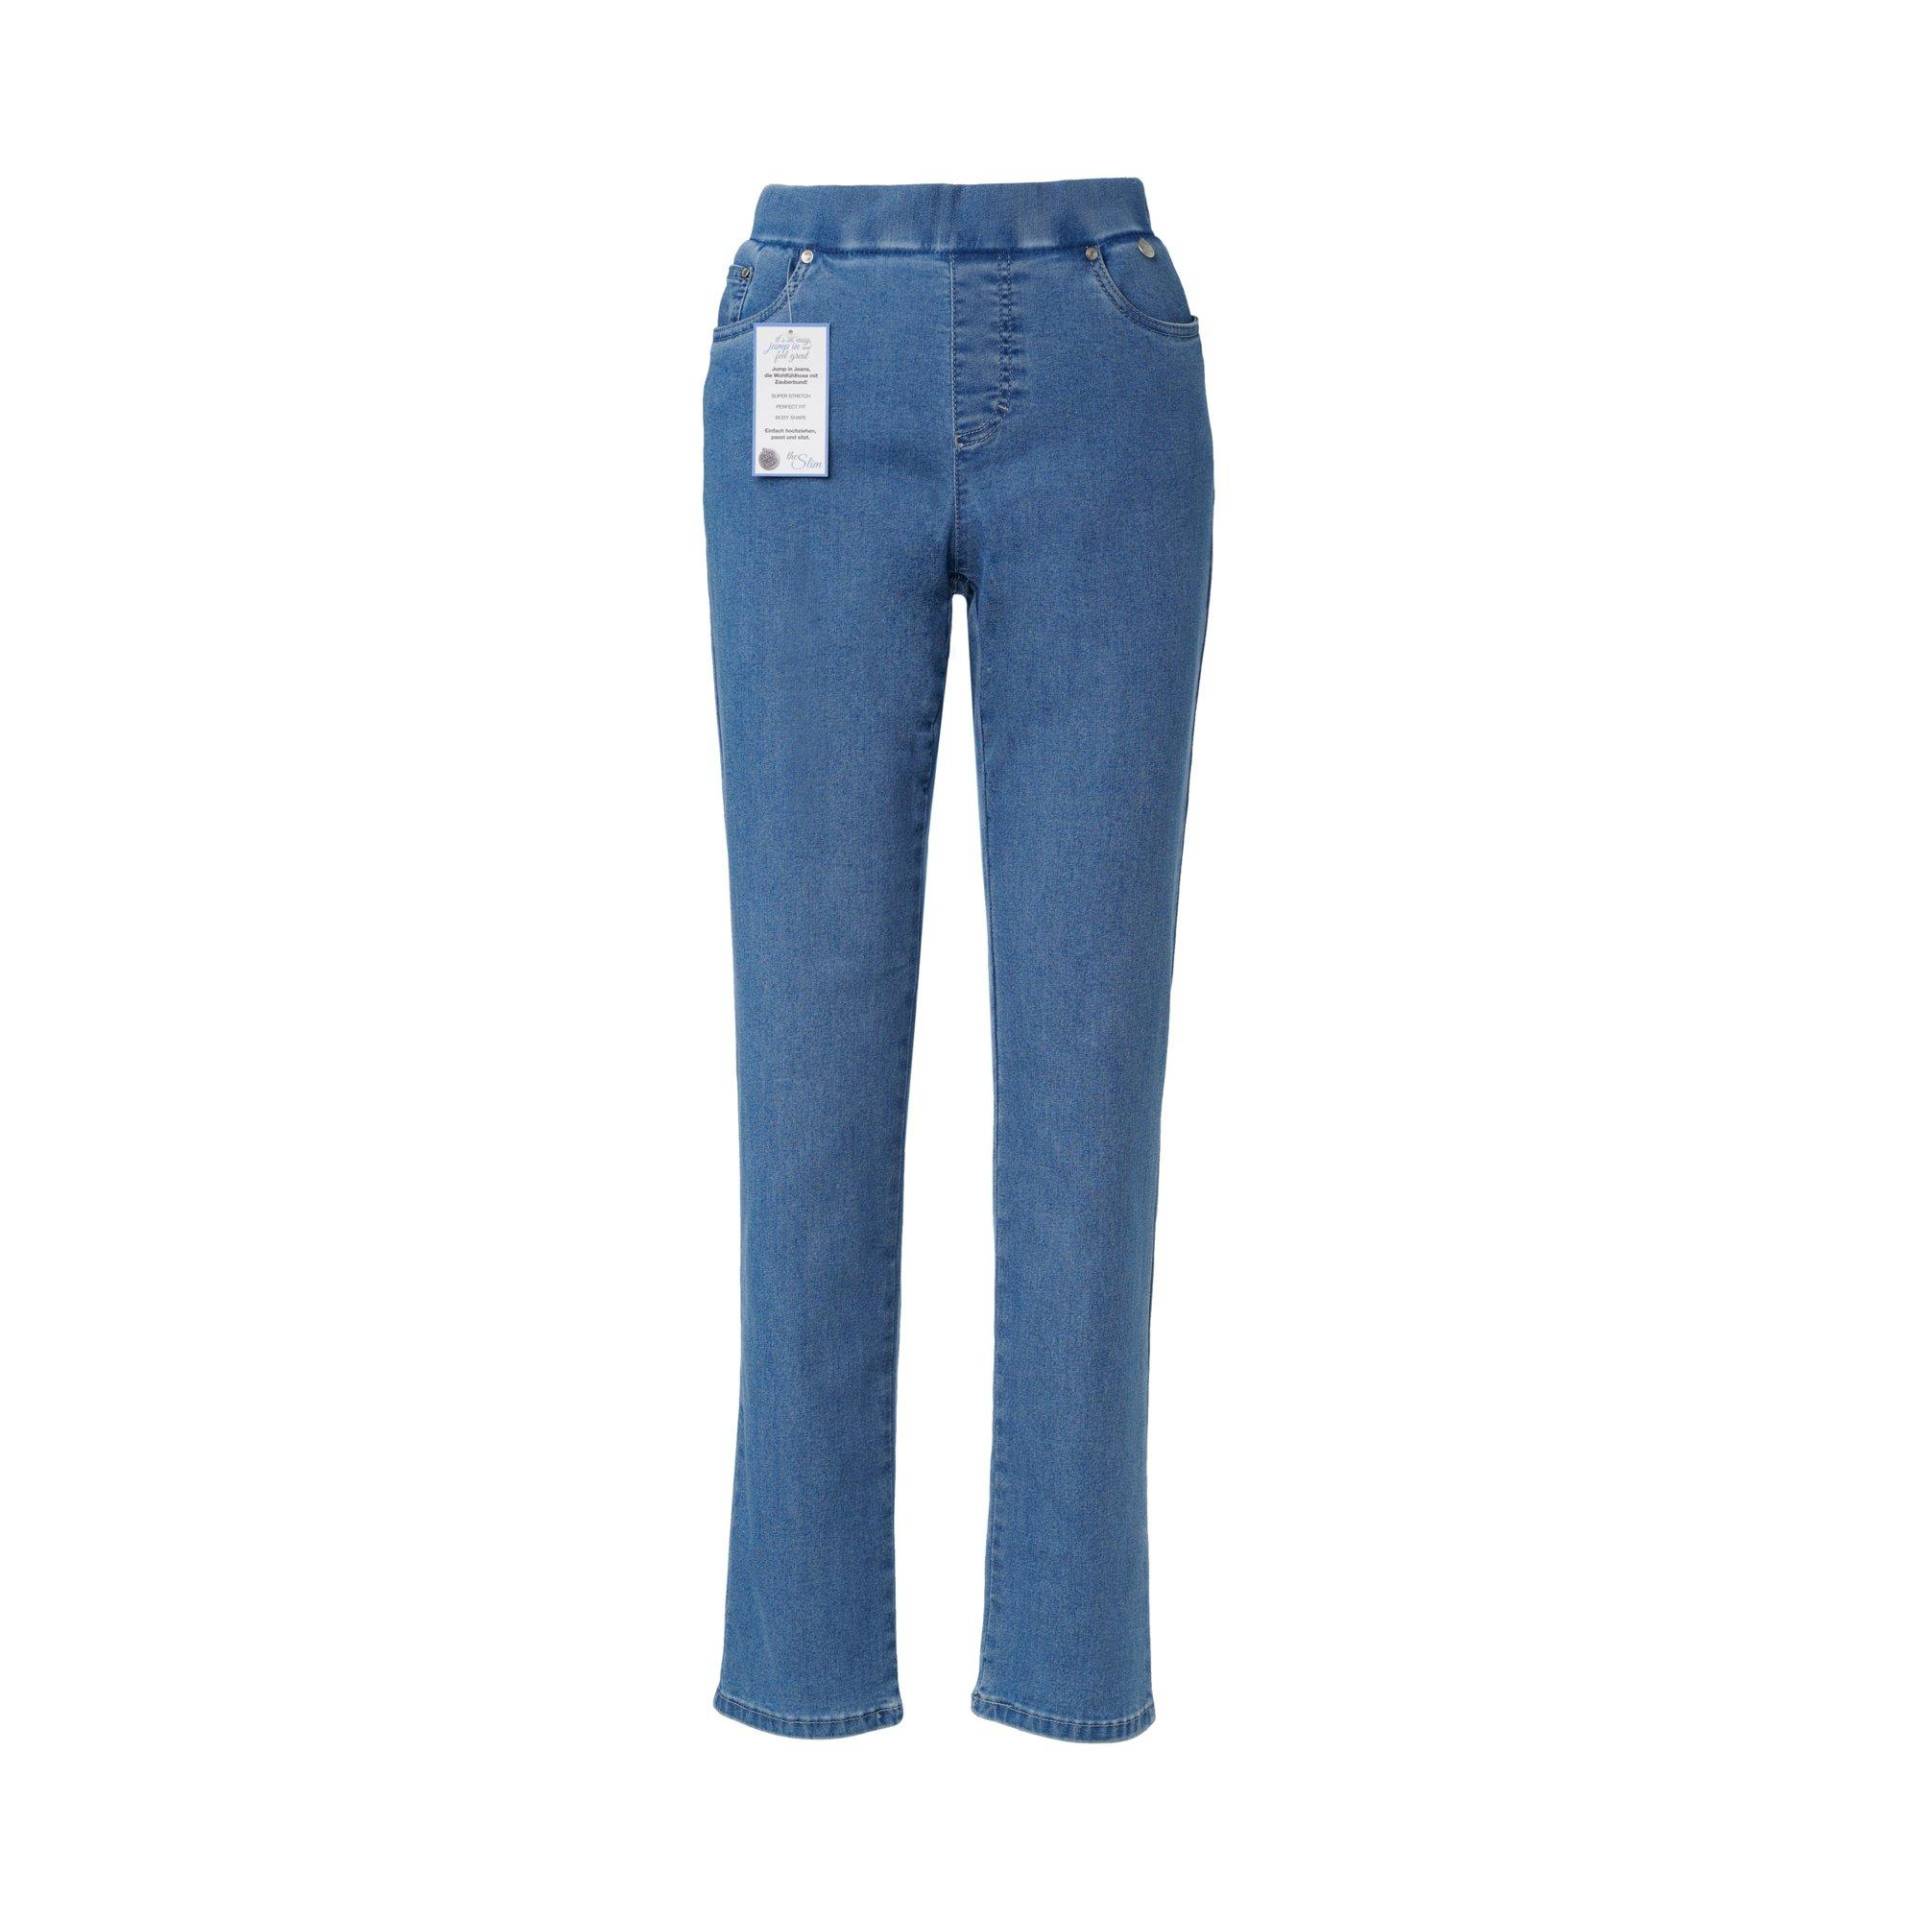 Jeans, Slim Fit Damen Blau Denim 44 von ANNA MONTANA